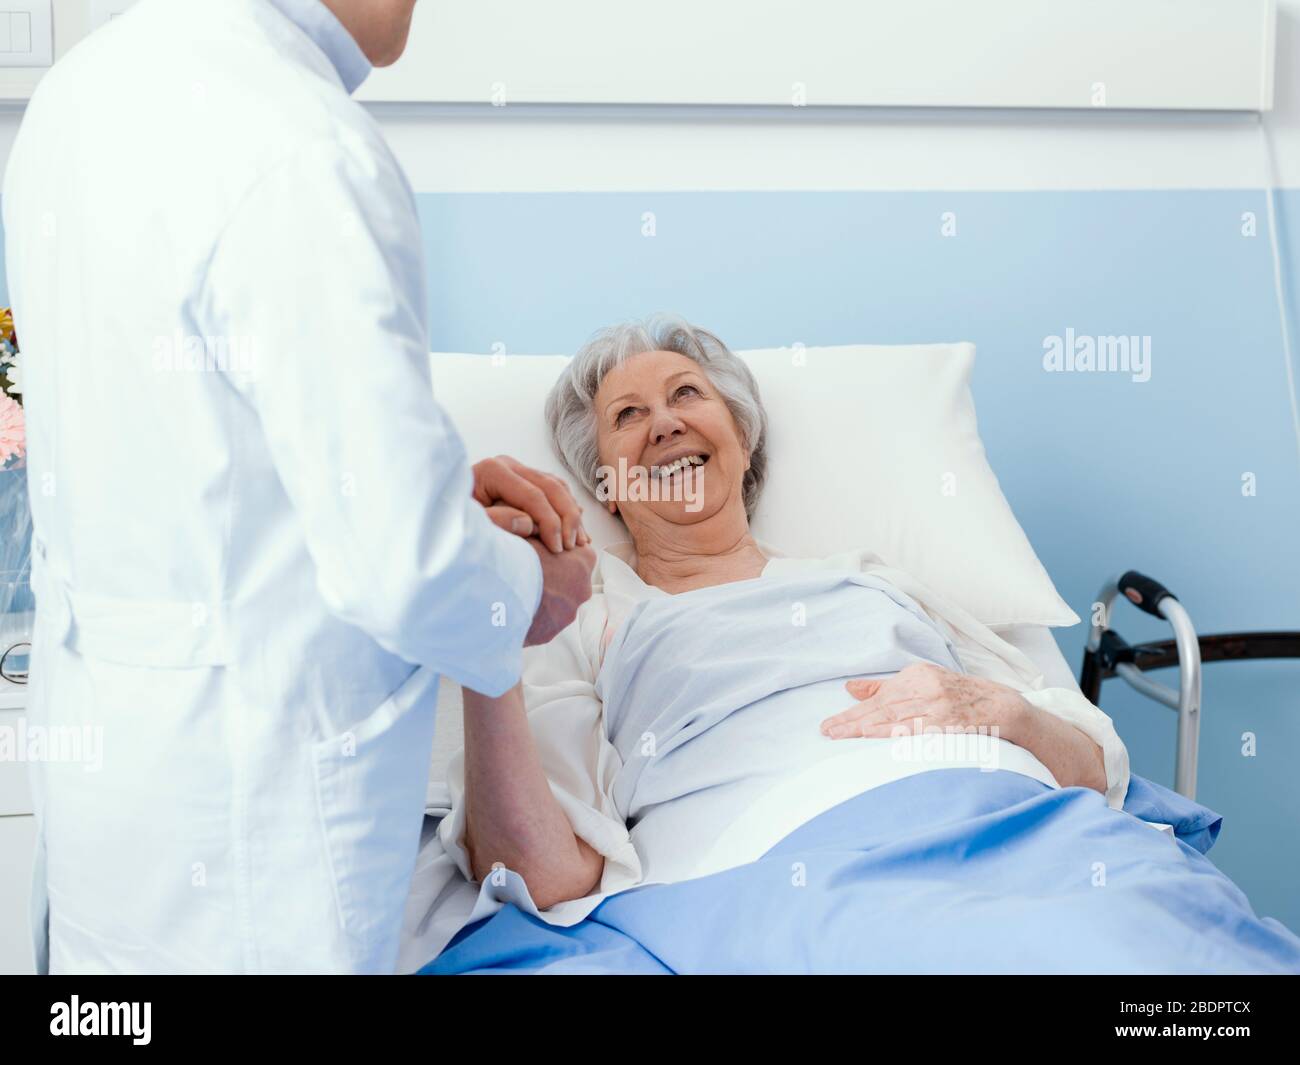 Médecin visitant un patient hospitalisé de haut niveau à l'hôpital, il tient sa main, la souriant et la réconfortant, concept de soins de haut niveau Banque D'Images